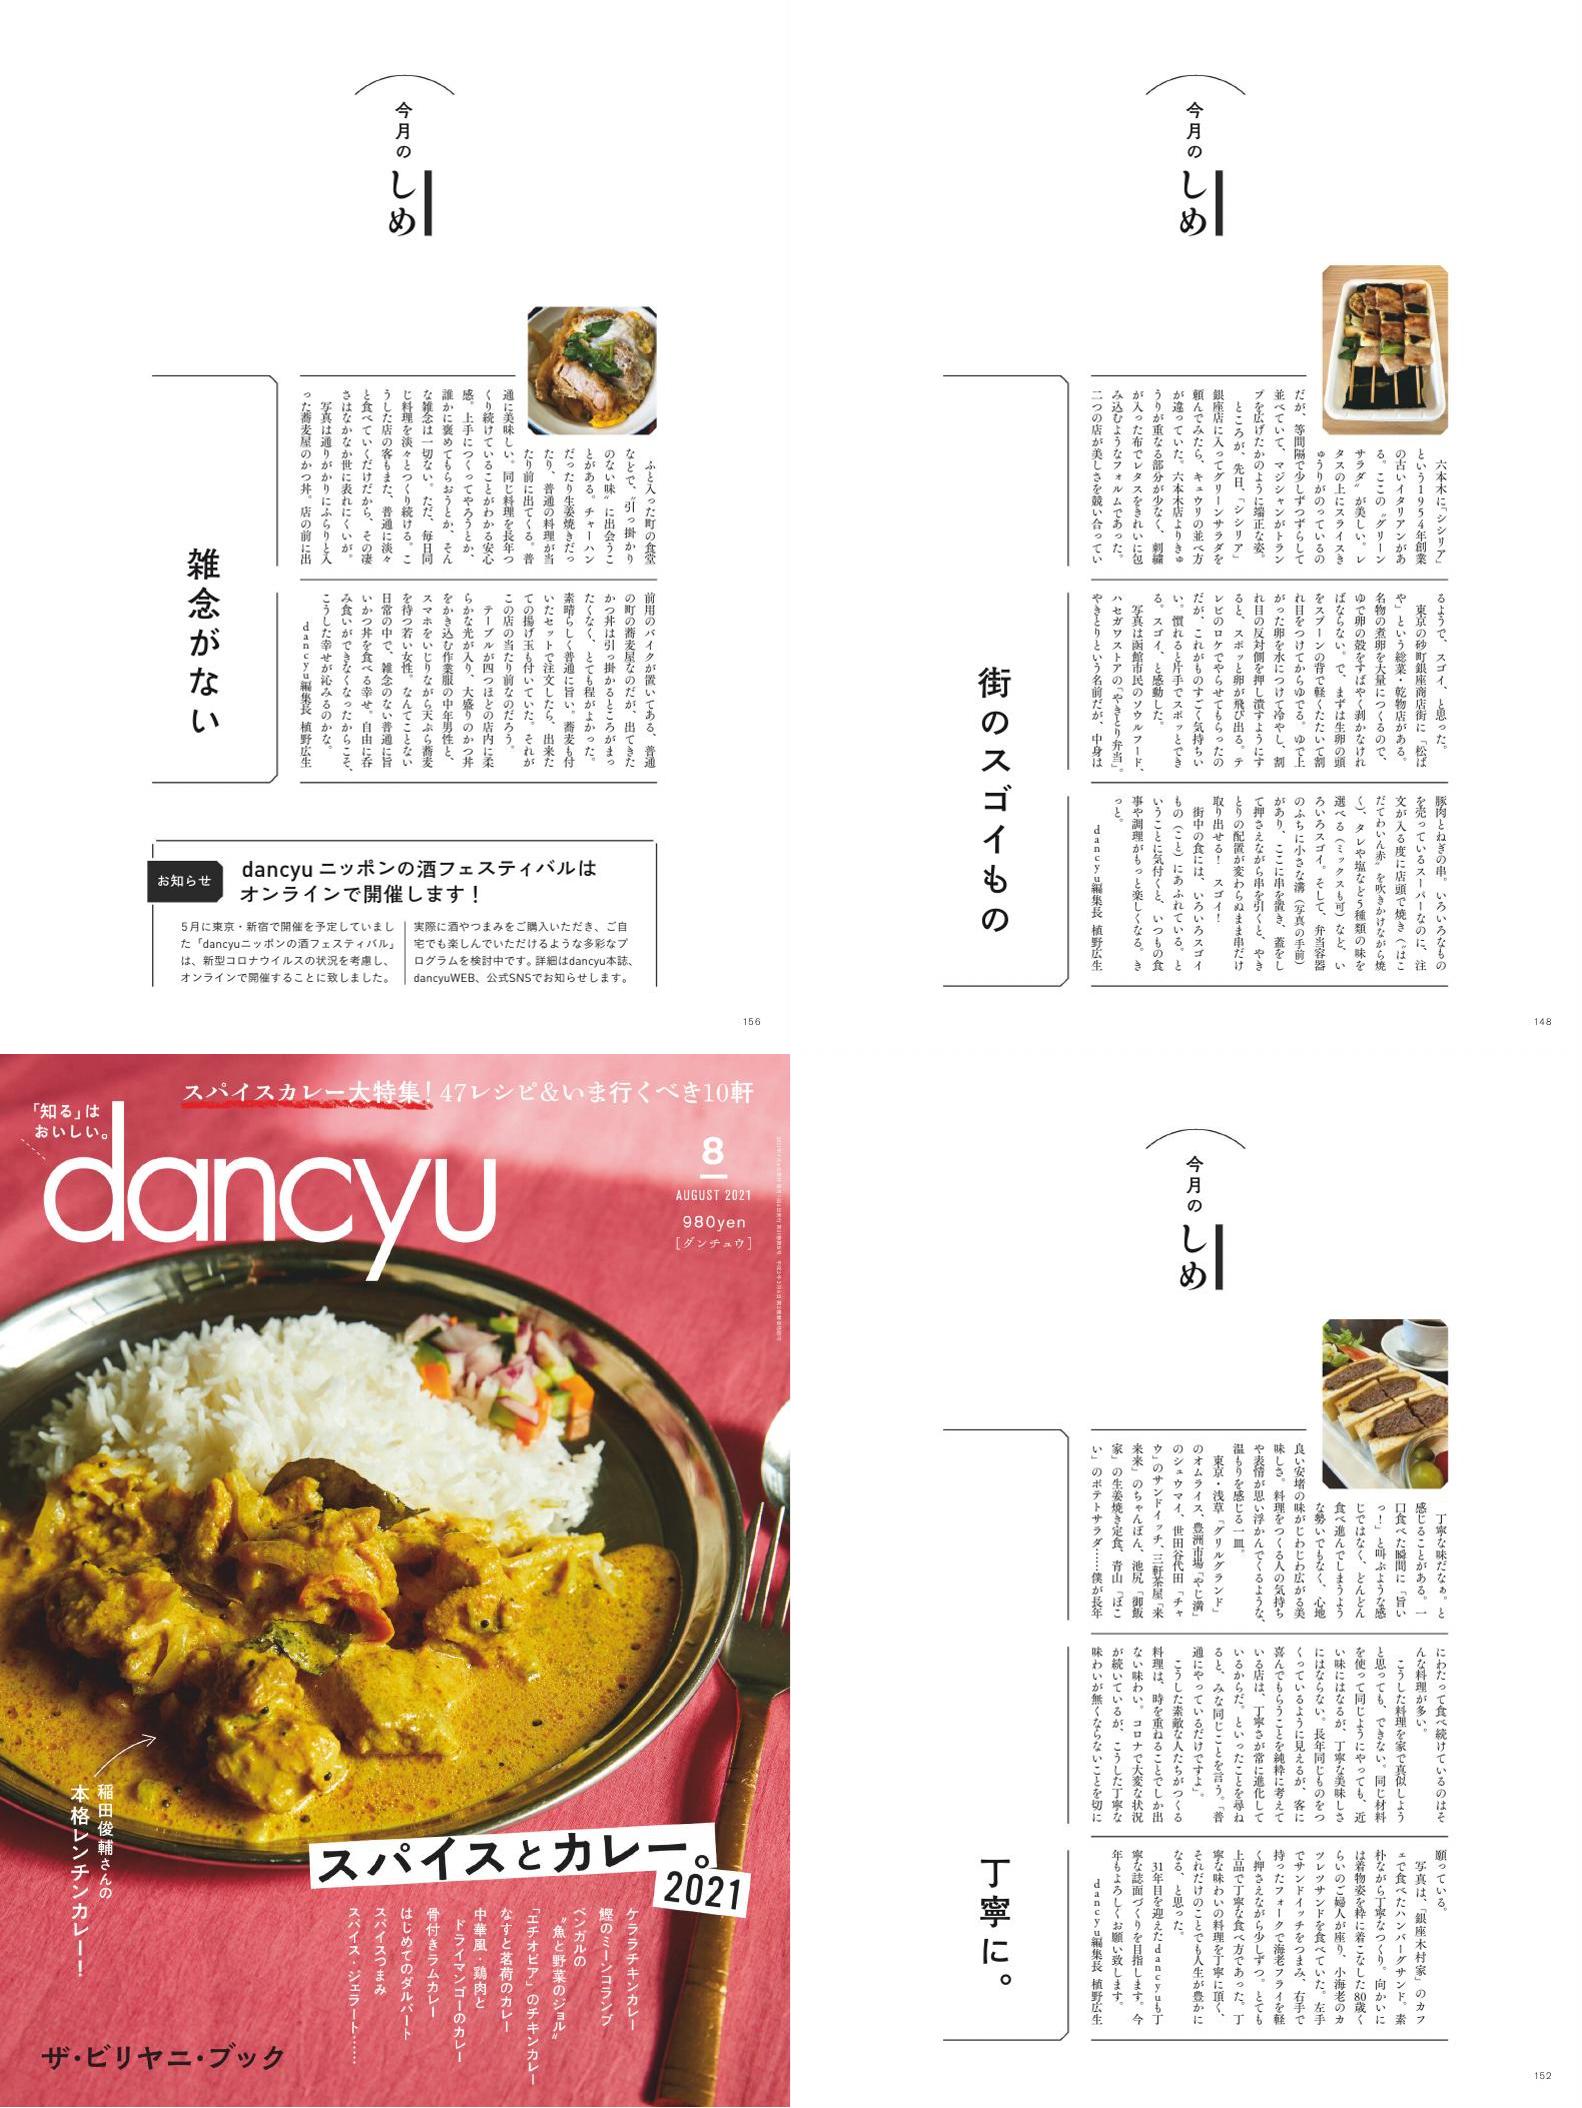 [日本]dancyu 料理之友杂志 2021年订阅 电子版PDF下载